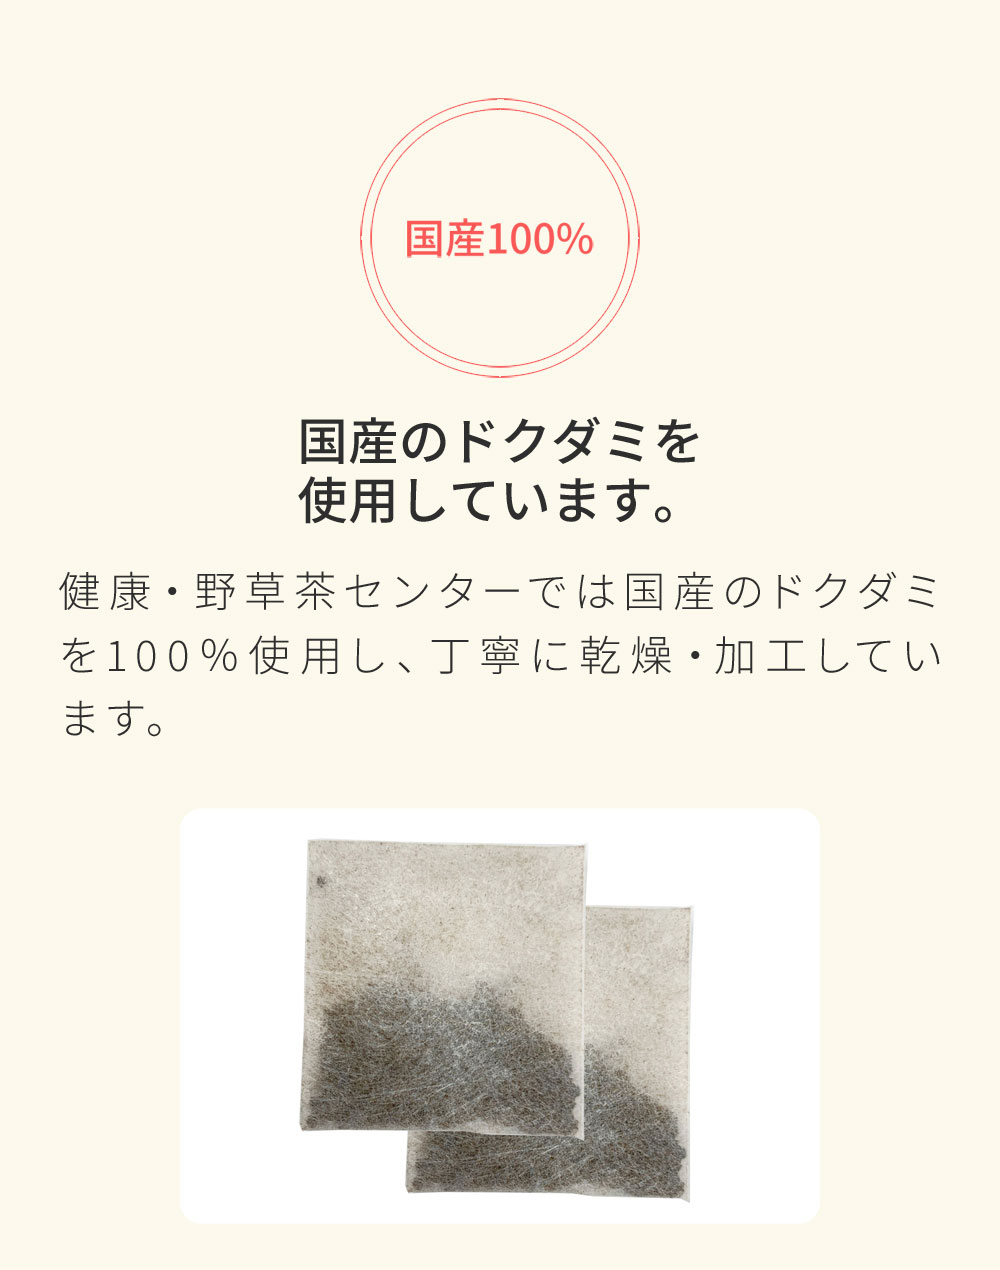 兵庫県産のドクダミを使用しています。